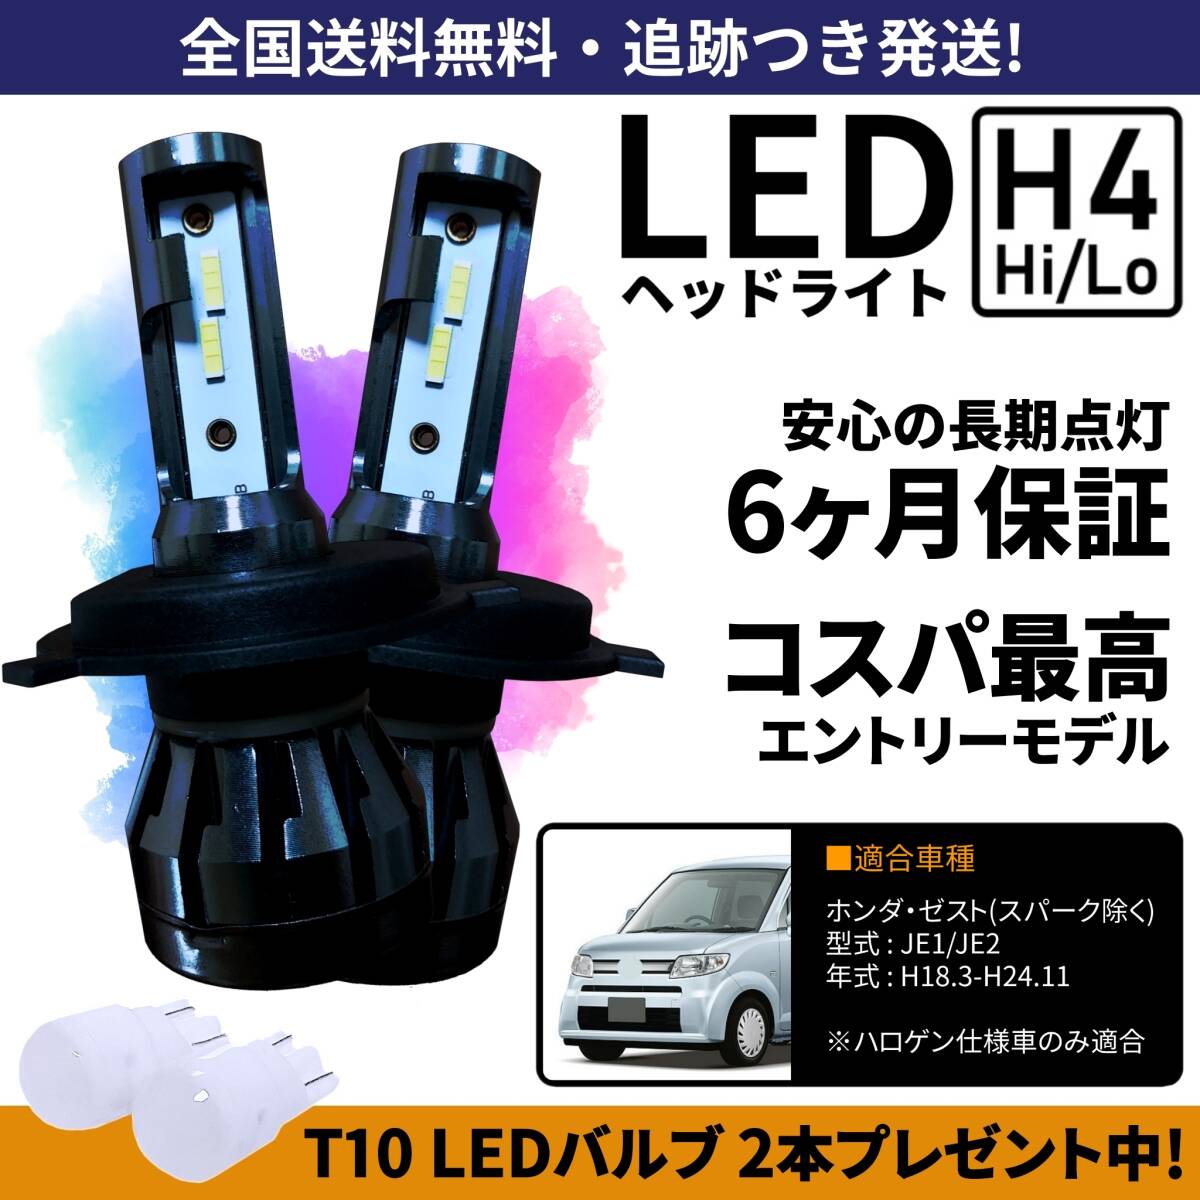 [ бесплатная доставка ] Honda Zest JE1 JE2 LED передняя фара H4 Hi/Lo белый 6000K соответствующий требованиям техосмотра с гарантией 